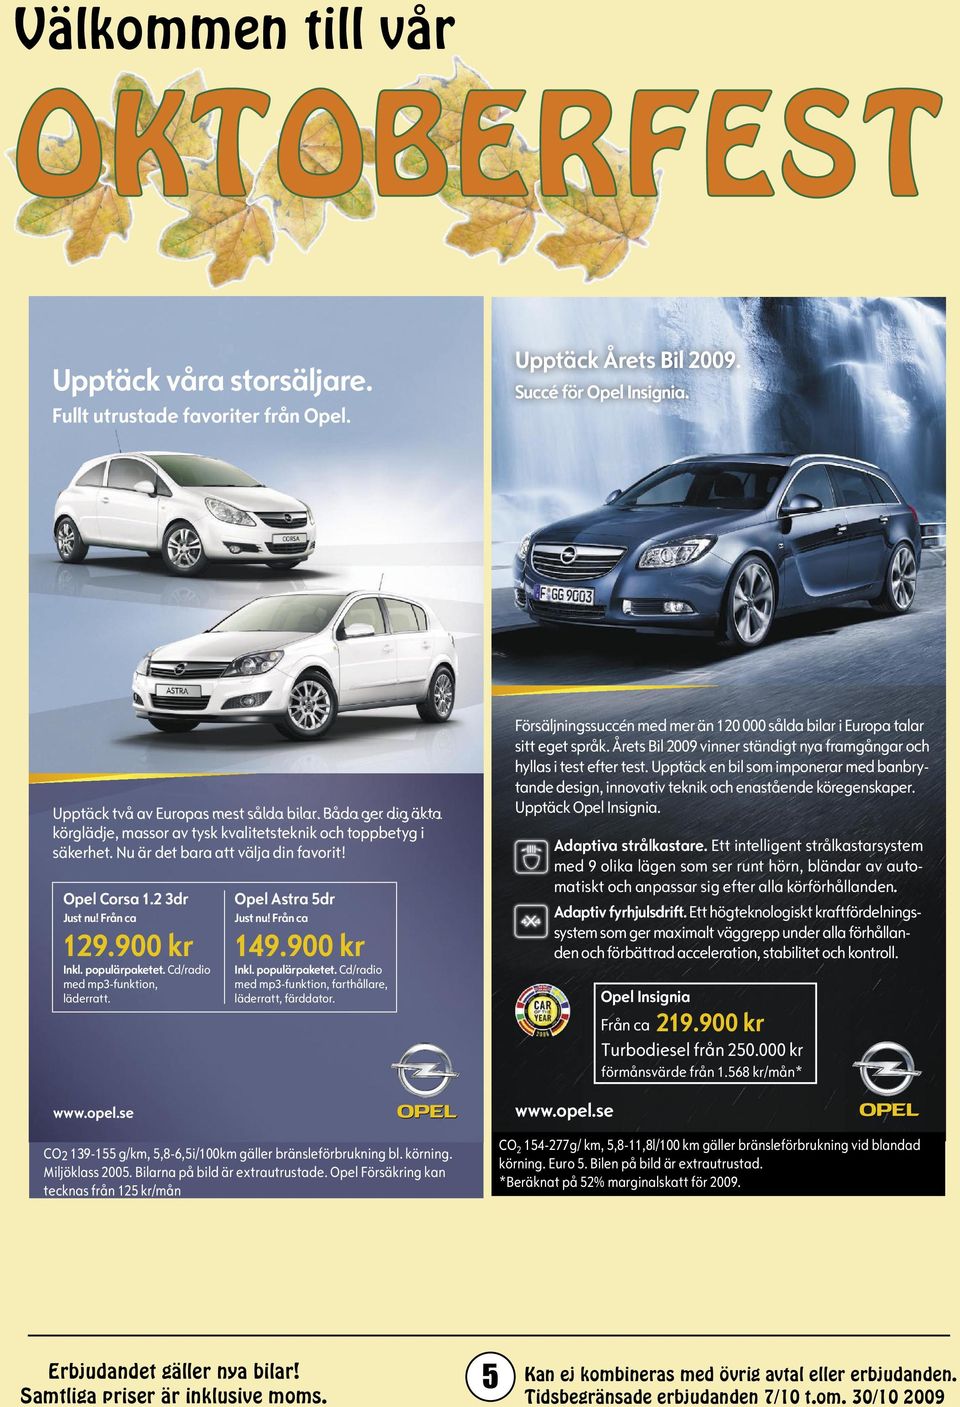 Cd/radio med mp3-funktion, läderratt. www.opel.se Opel Astra 5dr Just nu! Från ca 129.900 kr 149.900 kr Inkl. populärpaketet. Cd/radio med mp3-funktion, farthållare, läderratt, färddator.